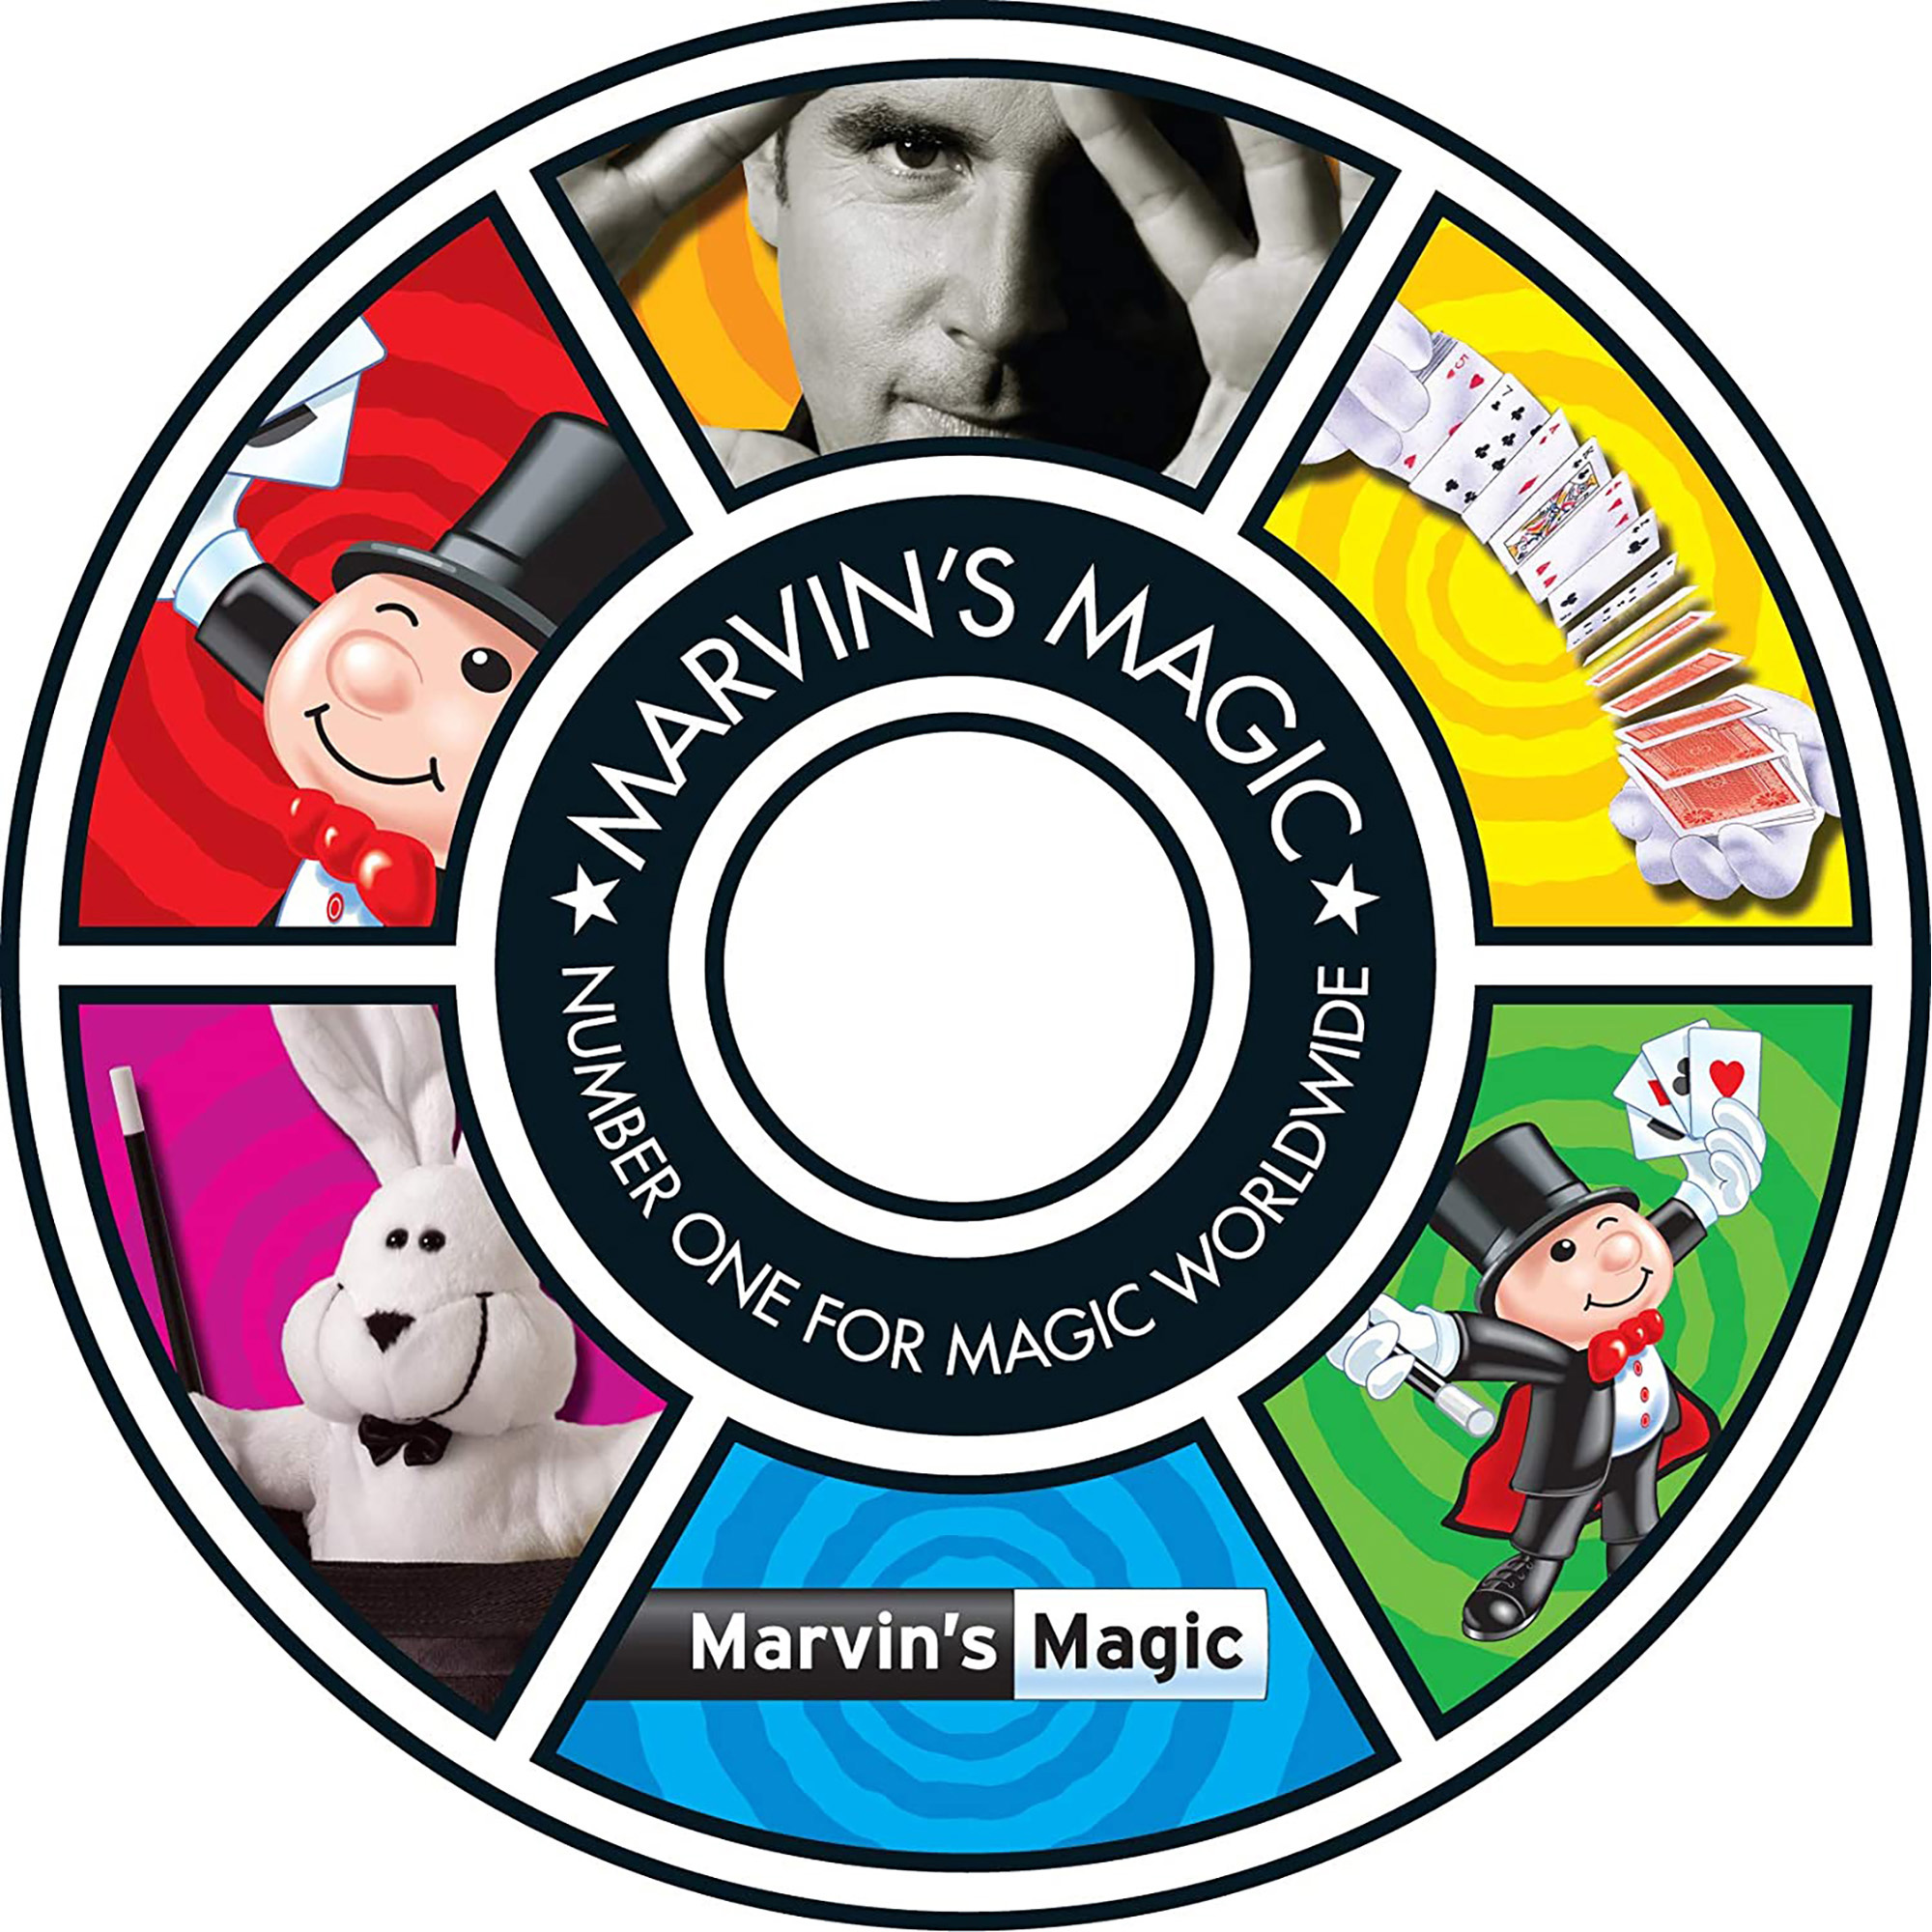 Marvin's amazing magic 30 tricks 2 - Marvin's Magic